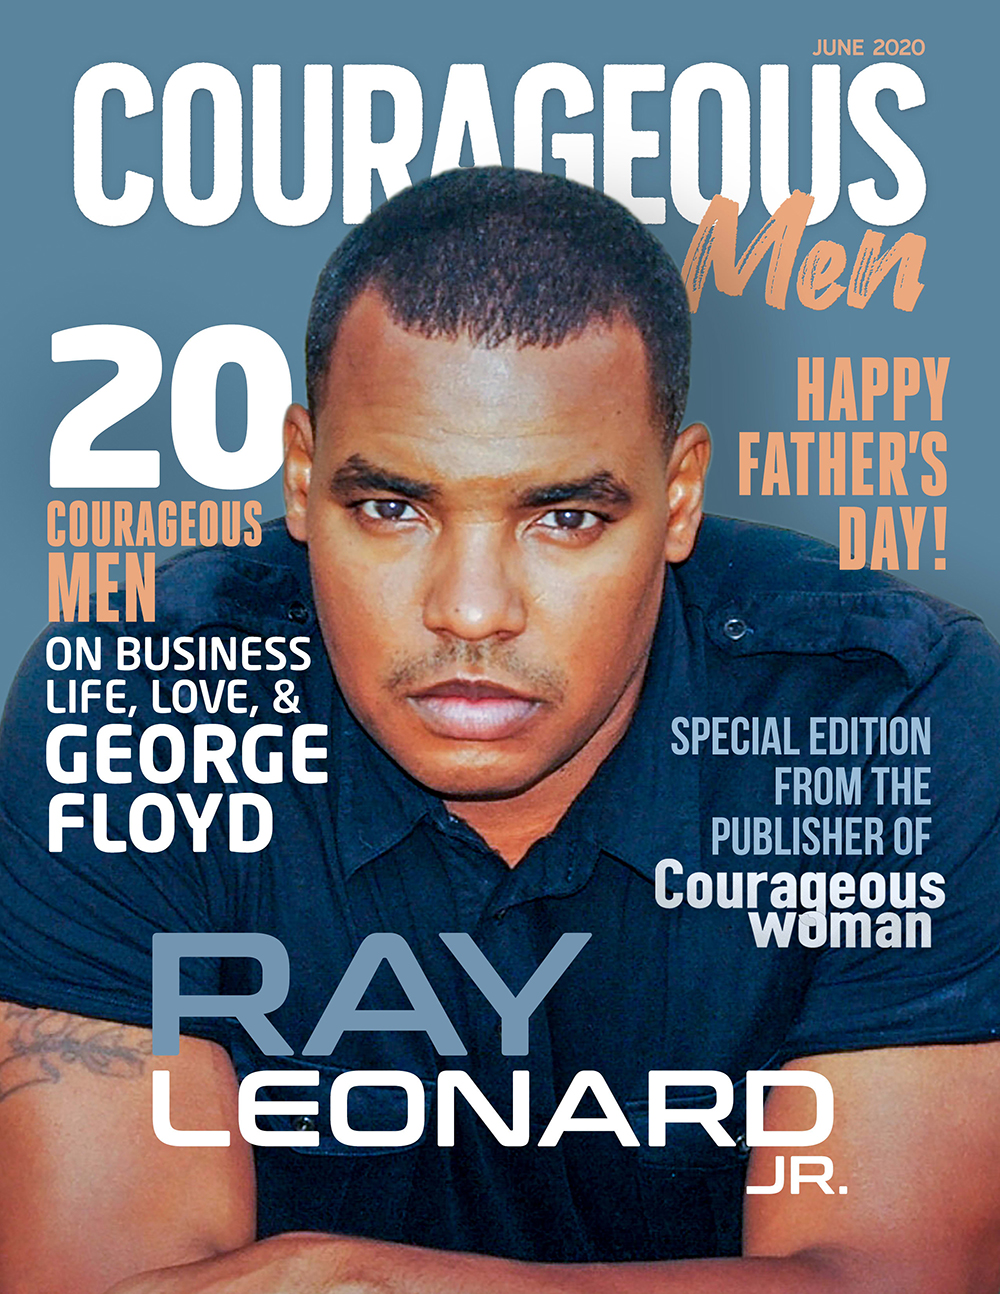 Ray Leonard Jr. COVER 2 small